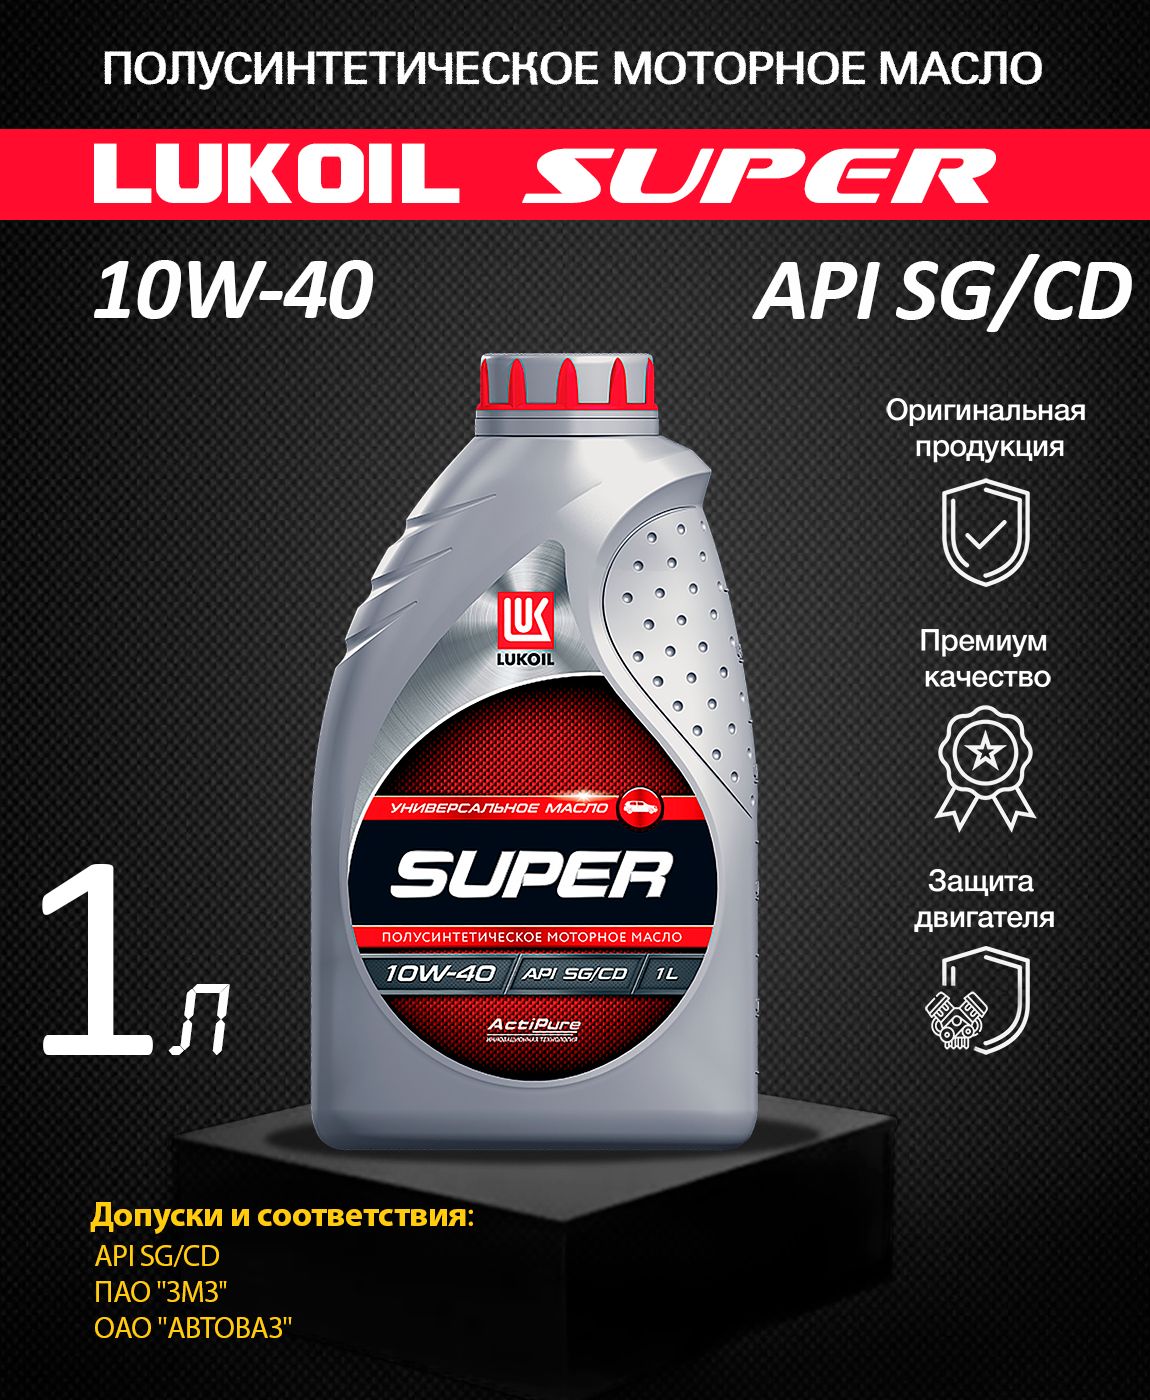 Масло лукойл 10w 40 артикул. Lukoil super 5w-40. Масло Лукойл супер 10w 40 полусинтетика. Лукойл 5w-40 SG полусинтетика. Lukoil super 10w-40 1л.